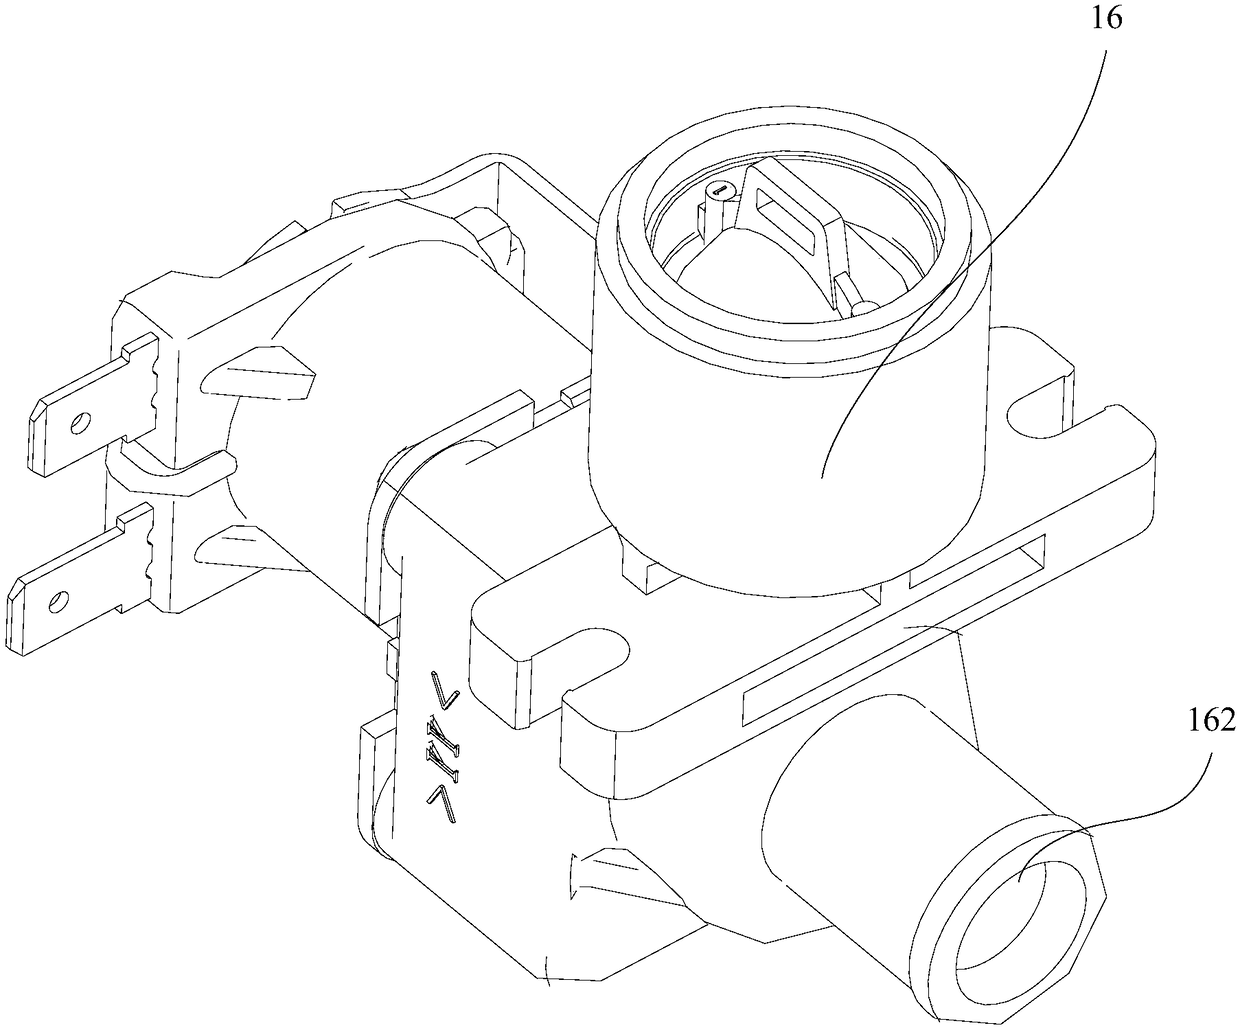 Water supply mechanism and washing machine